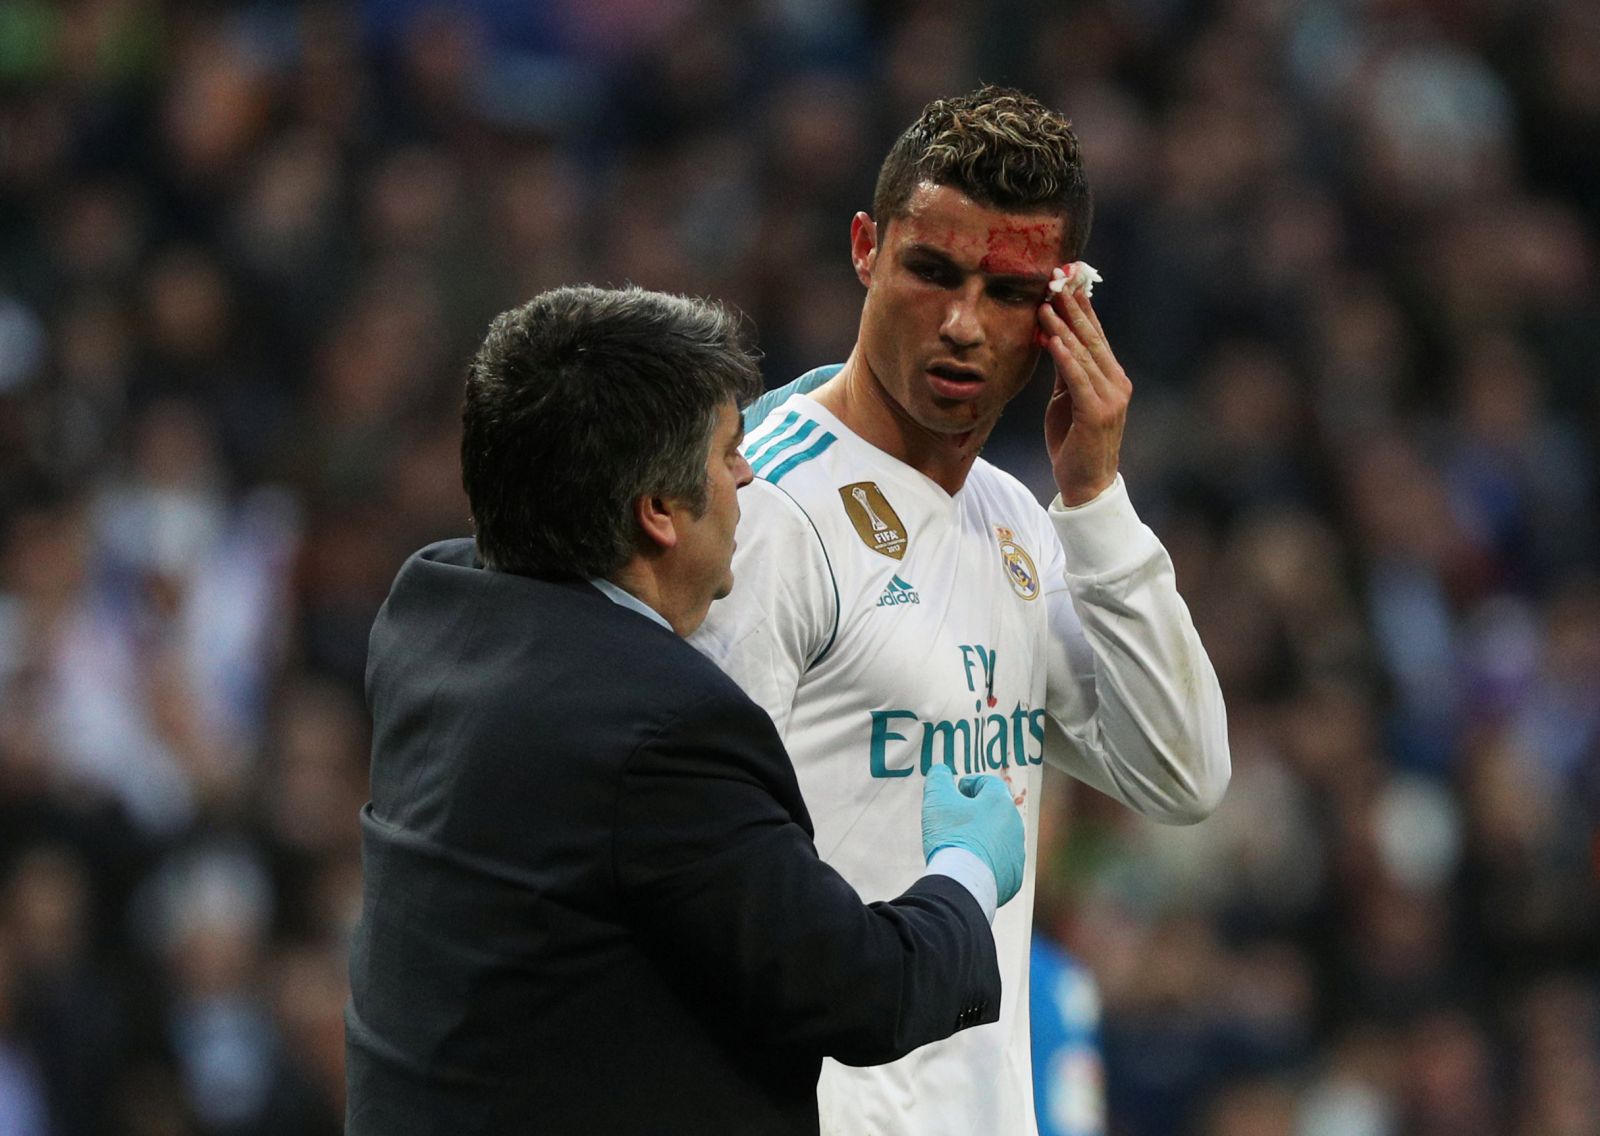 Ronaldo chảy máu sau nỗ lực ghi bàn nâng tỉ số lên 6-1. Ảnh: Reuters